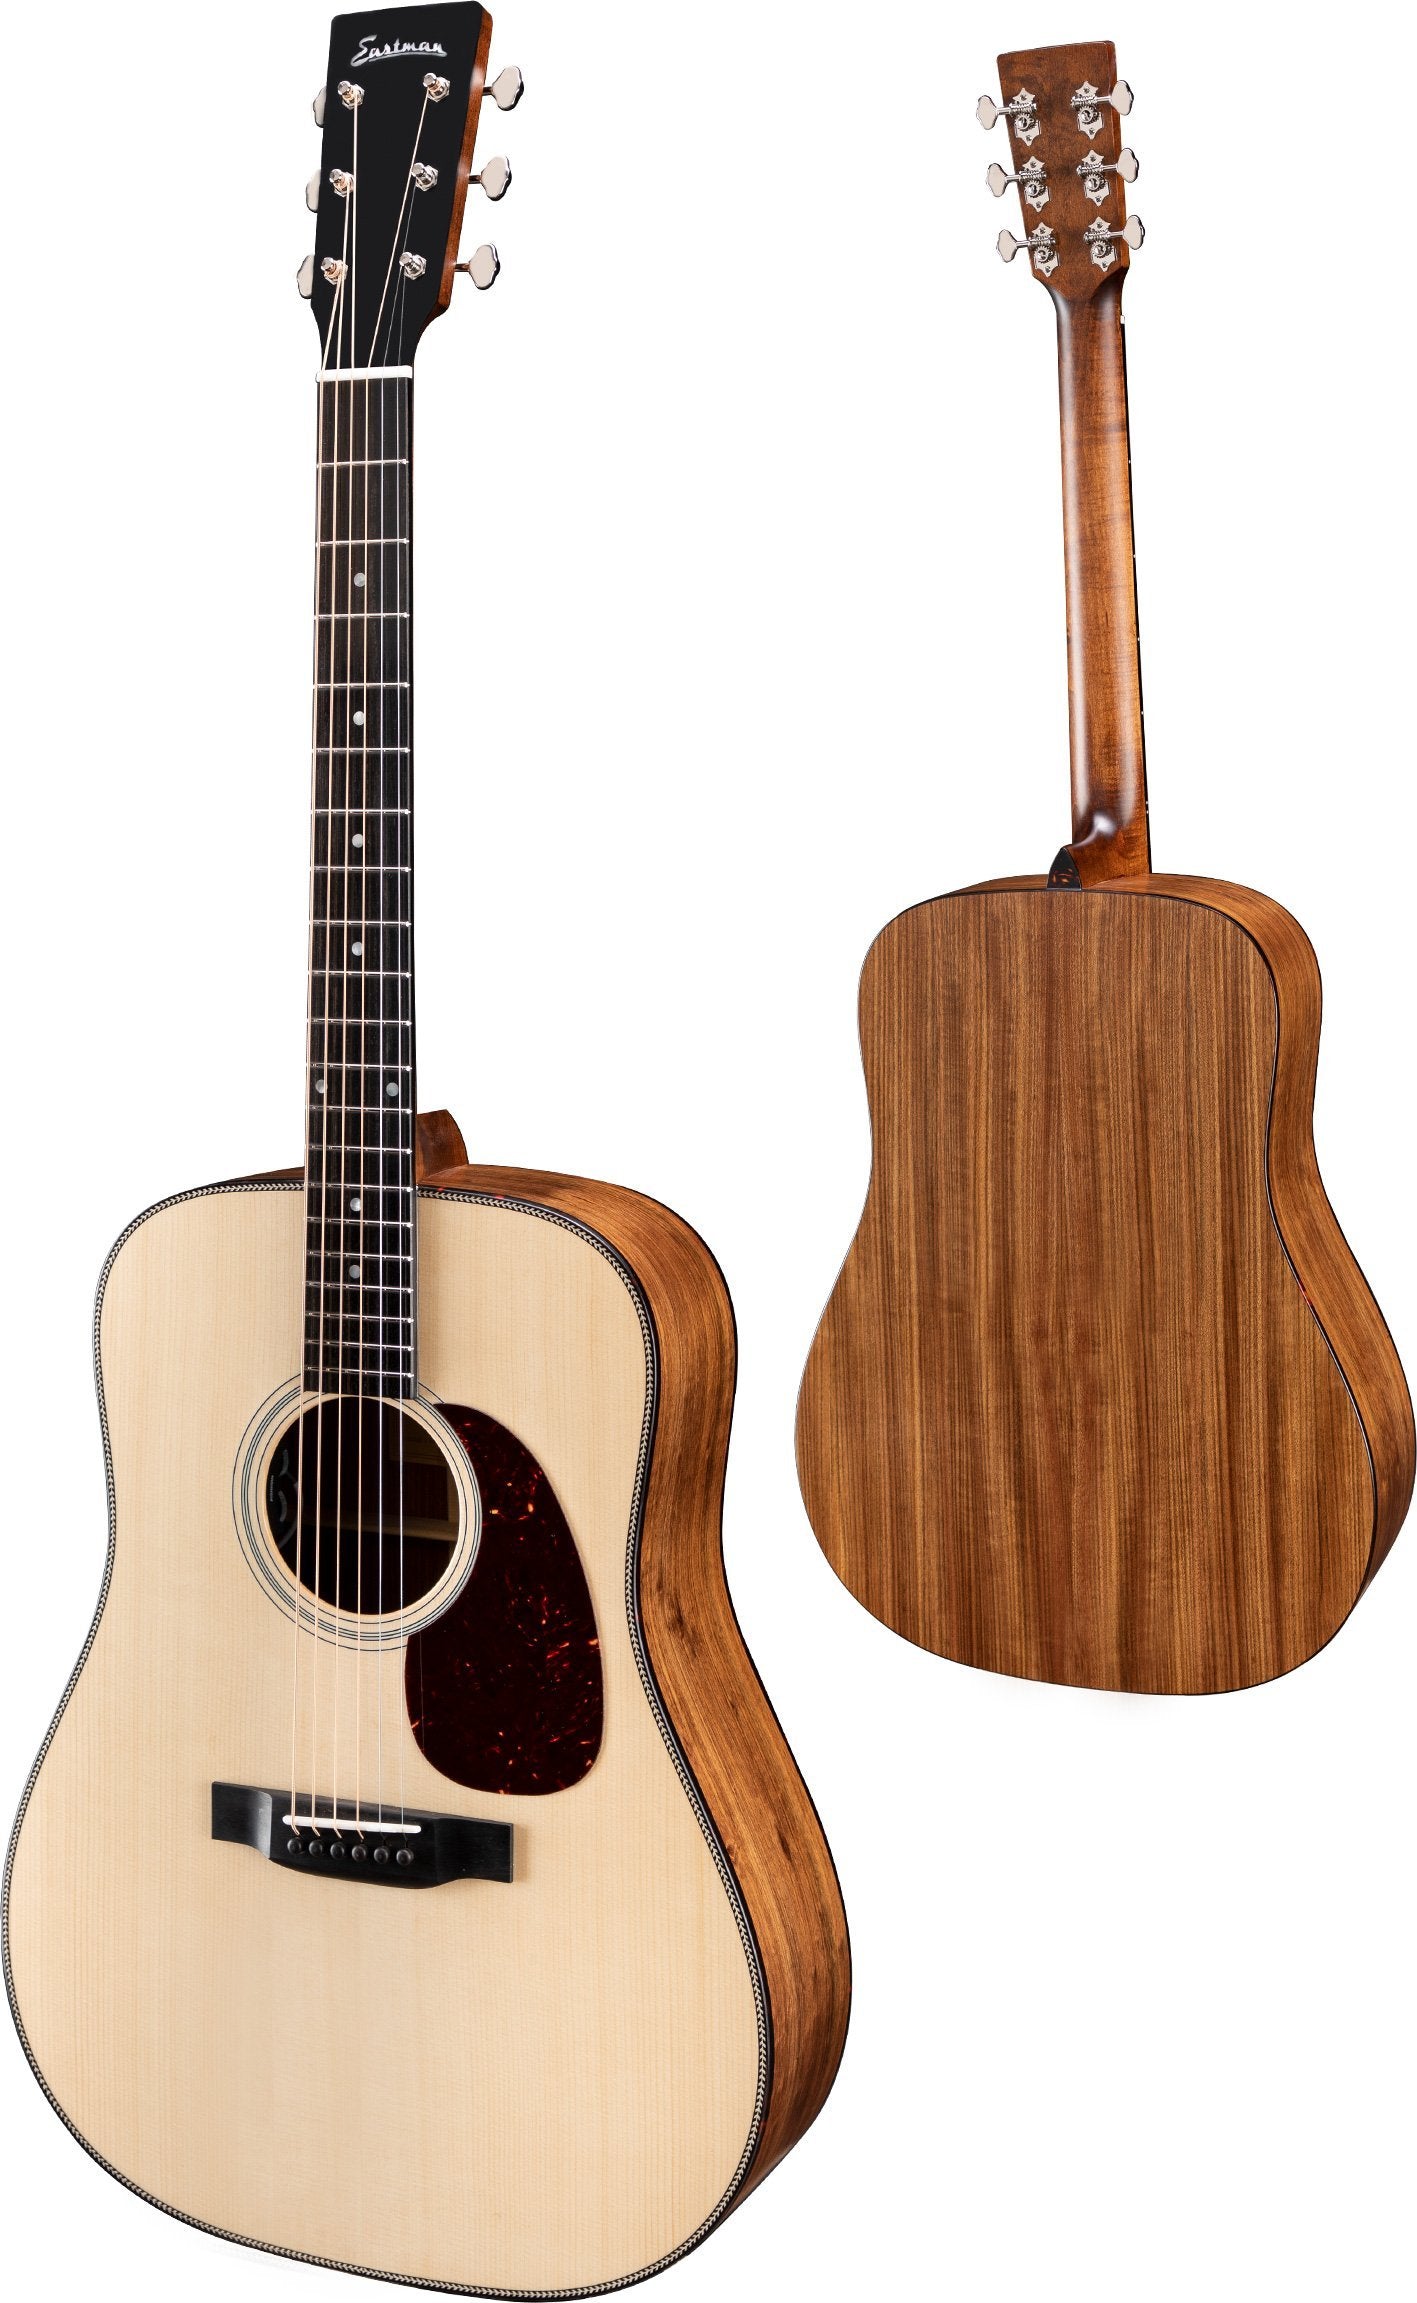 Eastman E3DE Natural, Acoustic Guitar for sale at Richards Guitars.